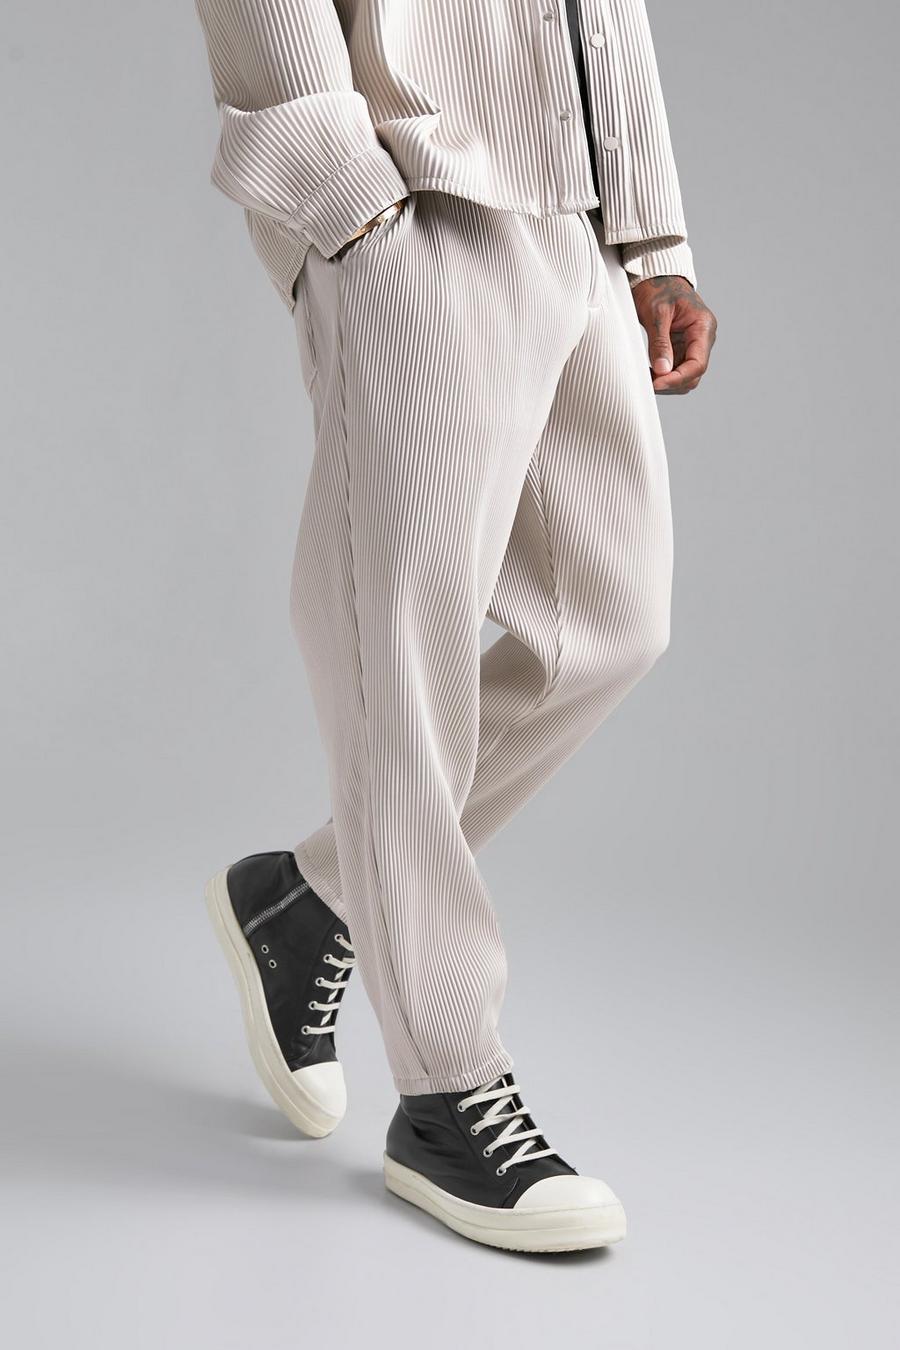 Pantalón de cuero sintético ajustado plisado, Ecru blanco